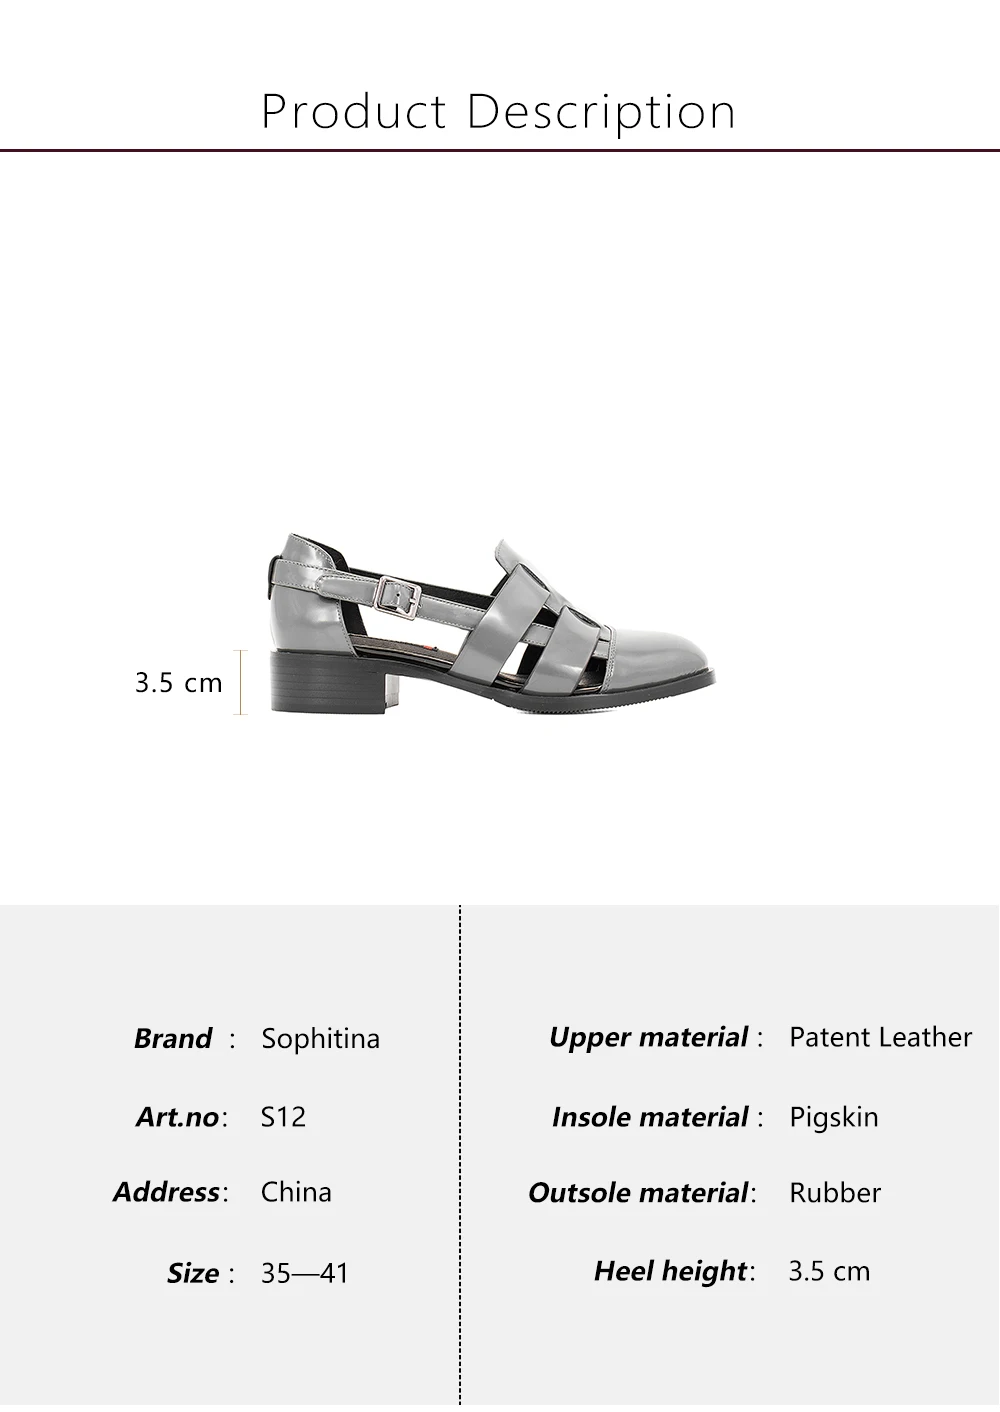 SOPHITINA/Женские сандалии выполнены из натуральной кожи. Верх обуви изготовлен из ремешков. Модель фиксируется на ноге при помощи ремешка с эластичной вставкой. Легкая и прочная подошва.Комфортная обувь для ходьбе S12